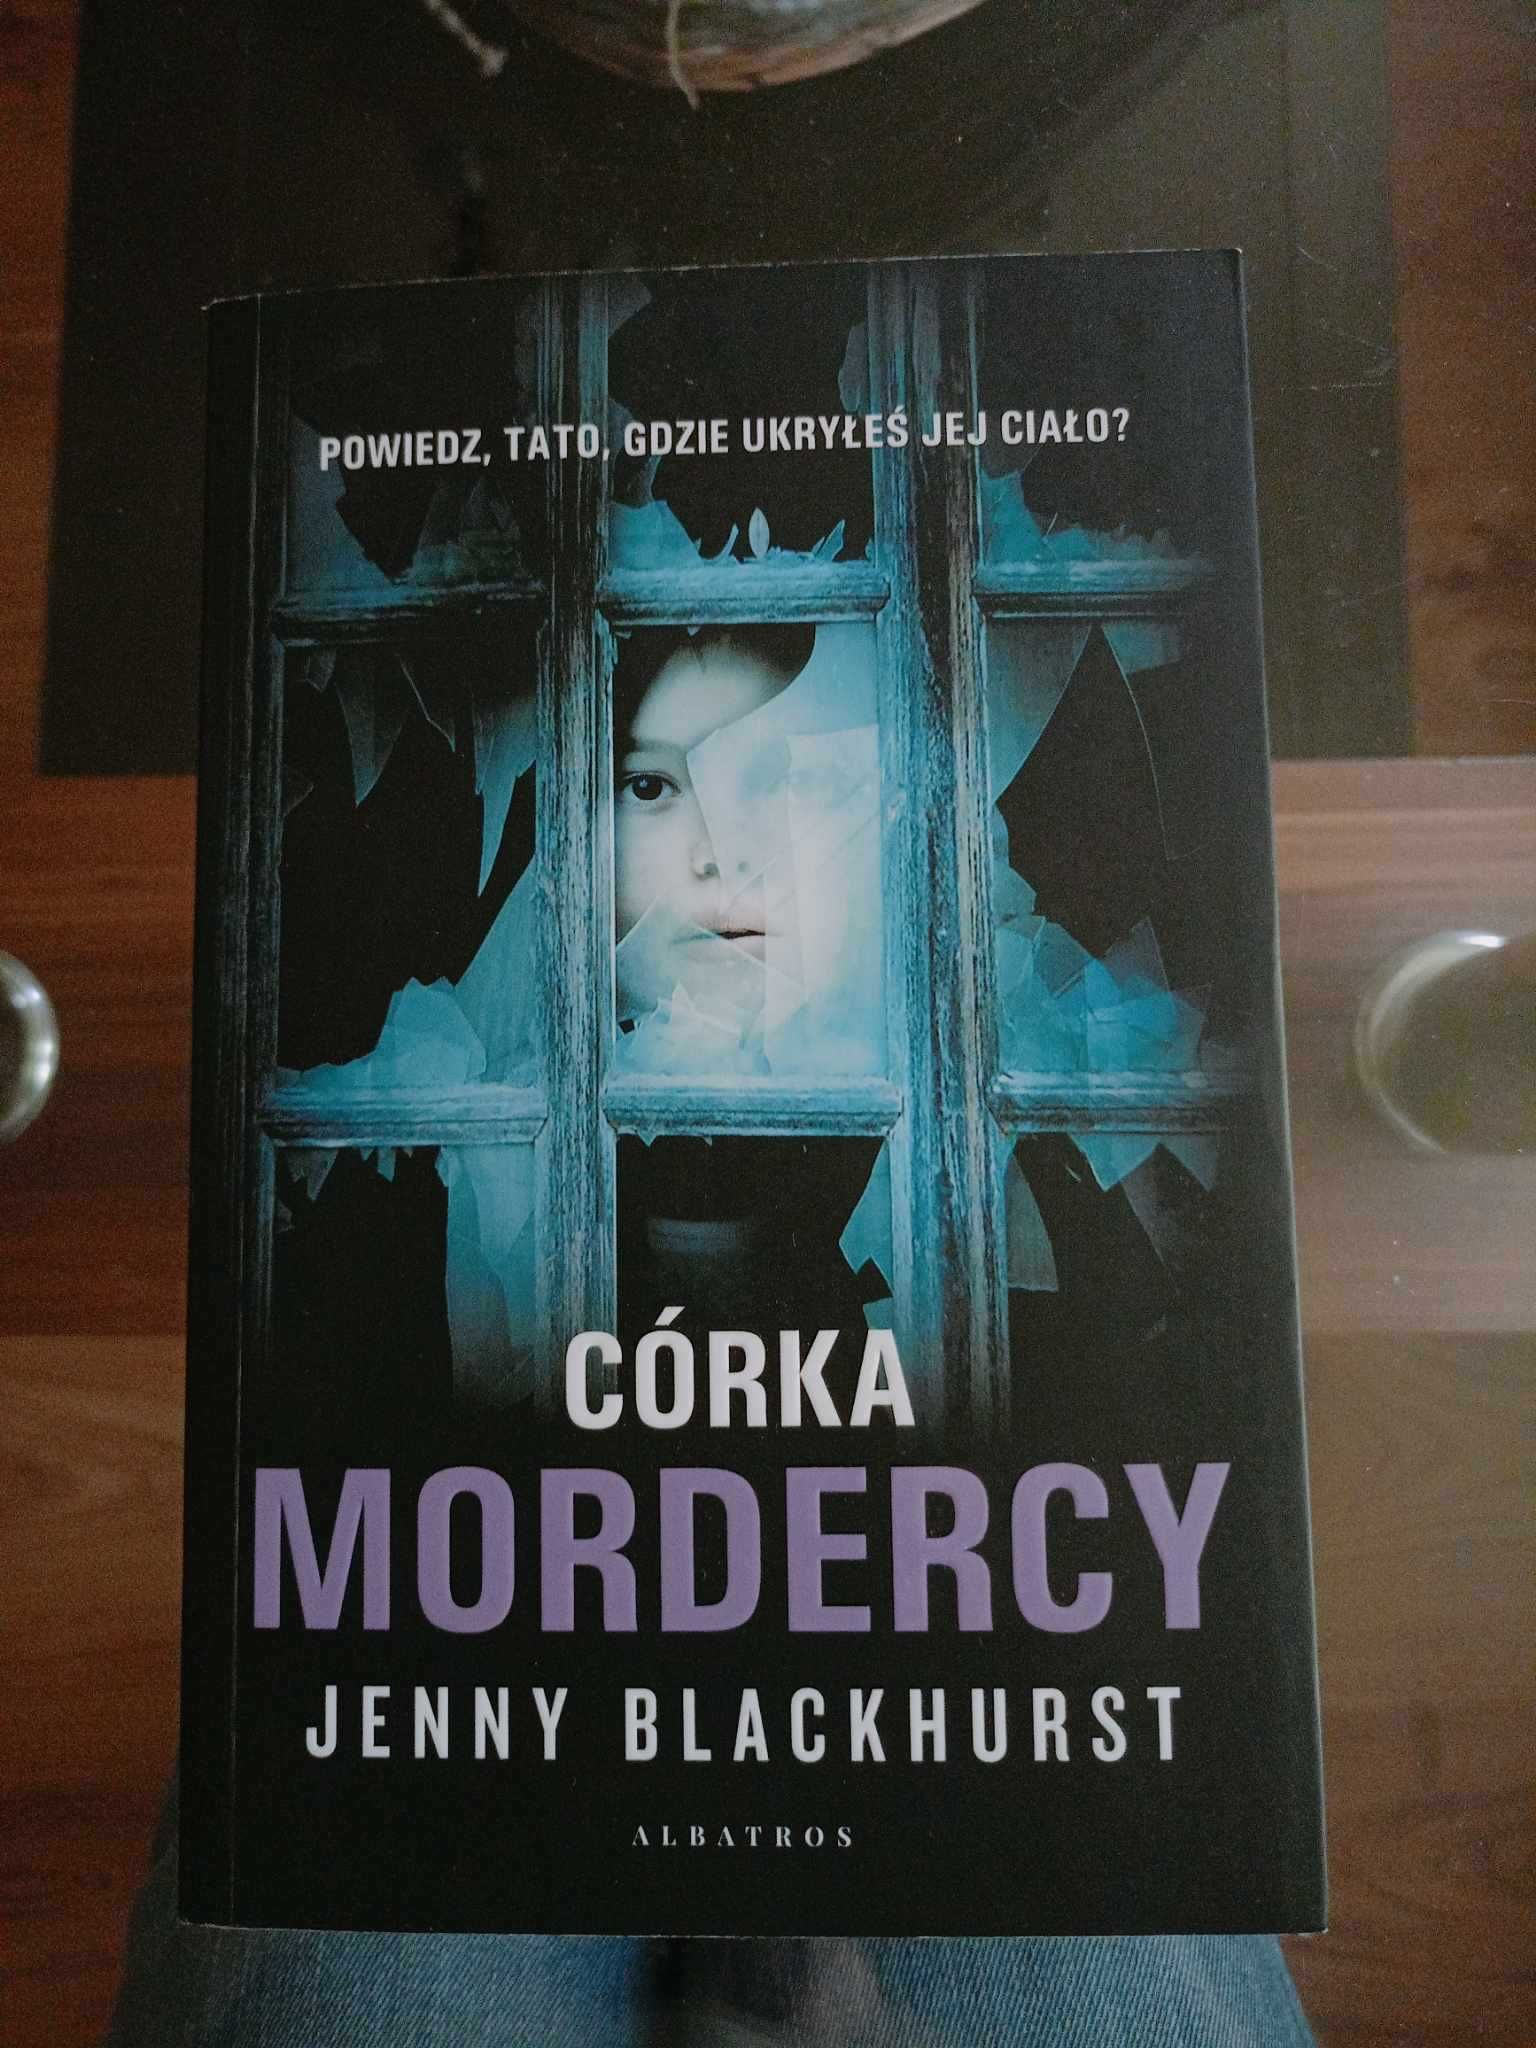 Jenny Blackhurst "Córka mordercy" thriller